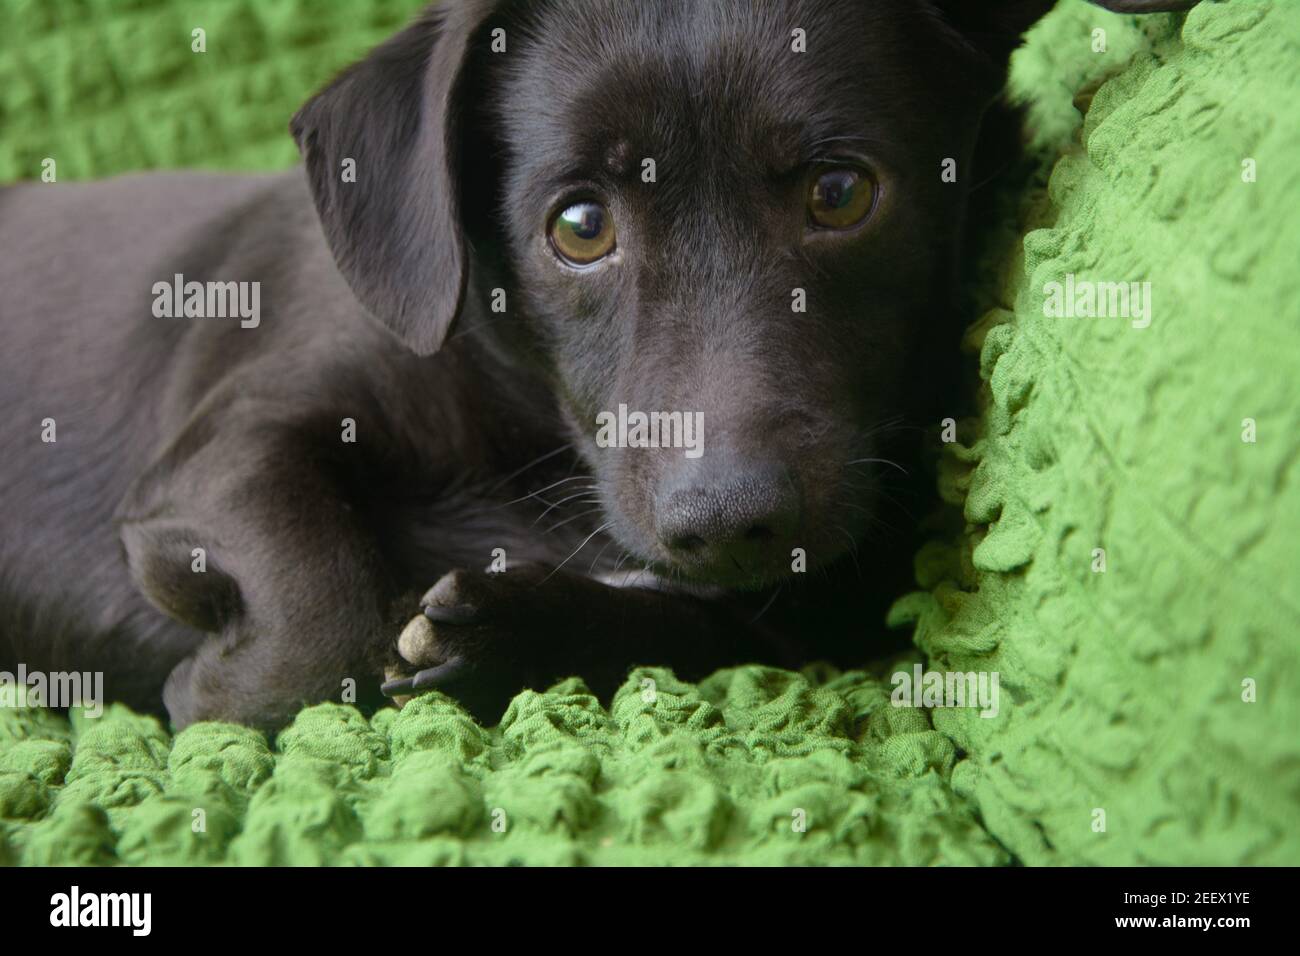 Il piccolo cane nero guarda da vicino alla fotocamera. Concetto di amore per gli animali domestici. Foto Stock